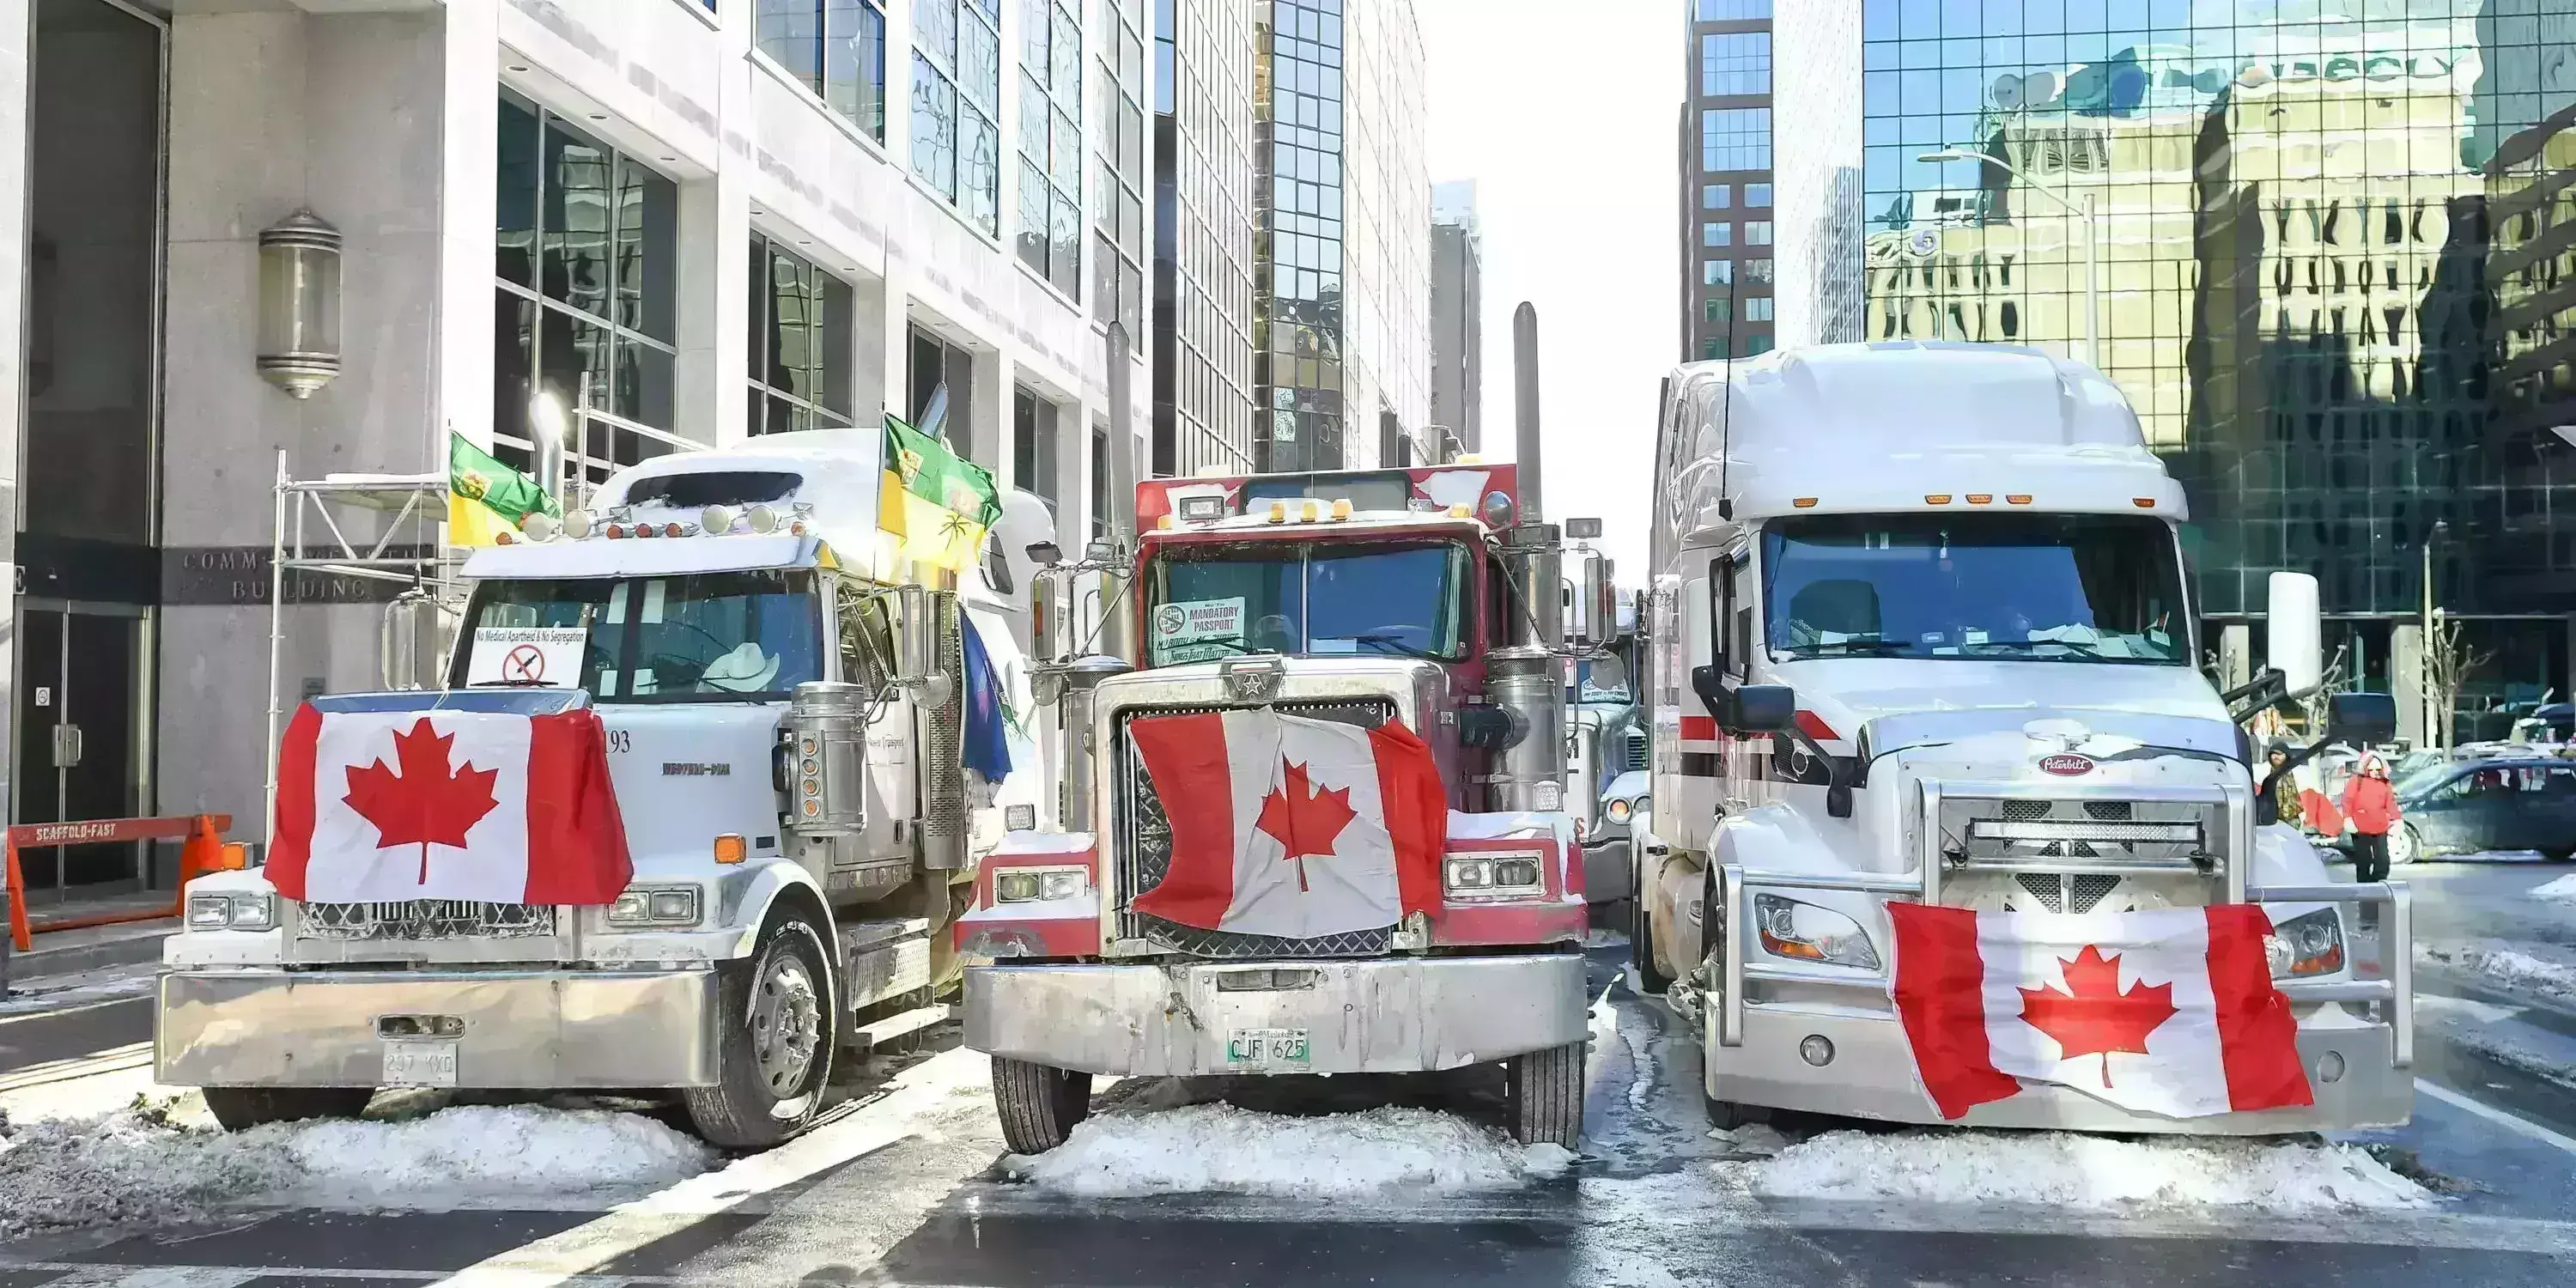 कनाडा में ट्रक चालकों ने तेज किया आंदोलन, राजधानी में लगा आपातकाल